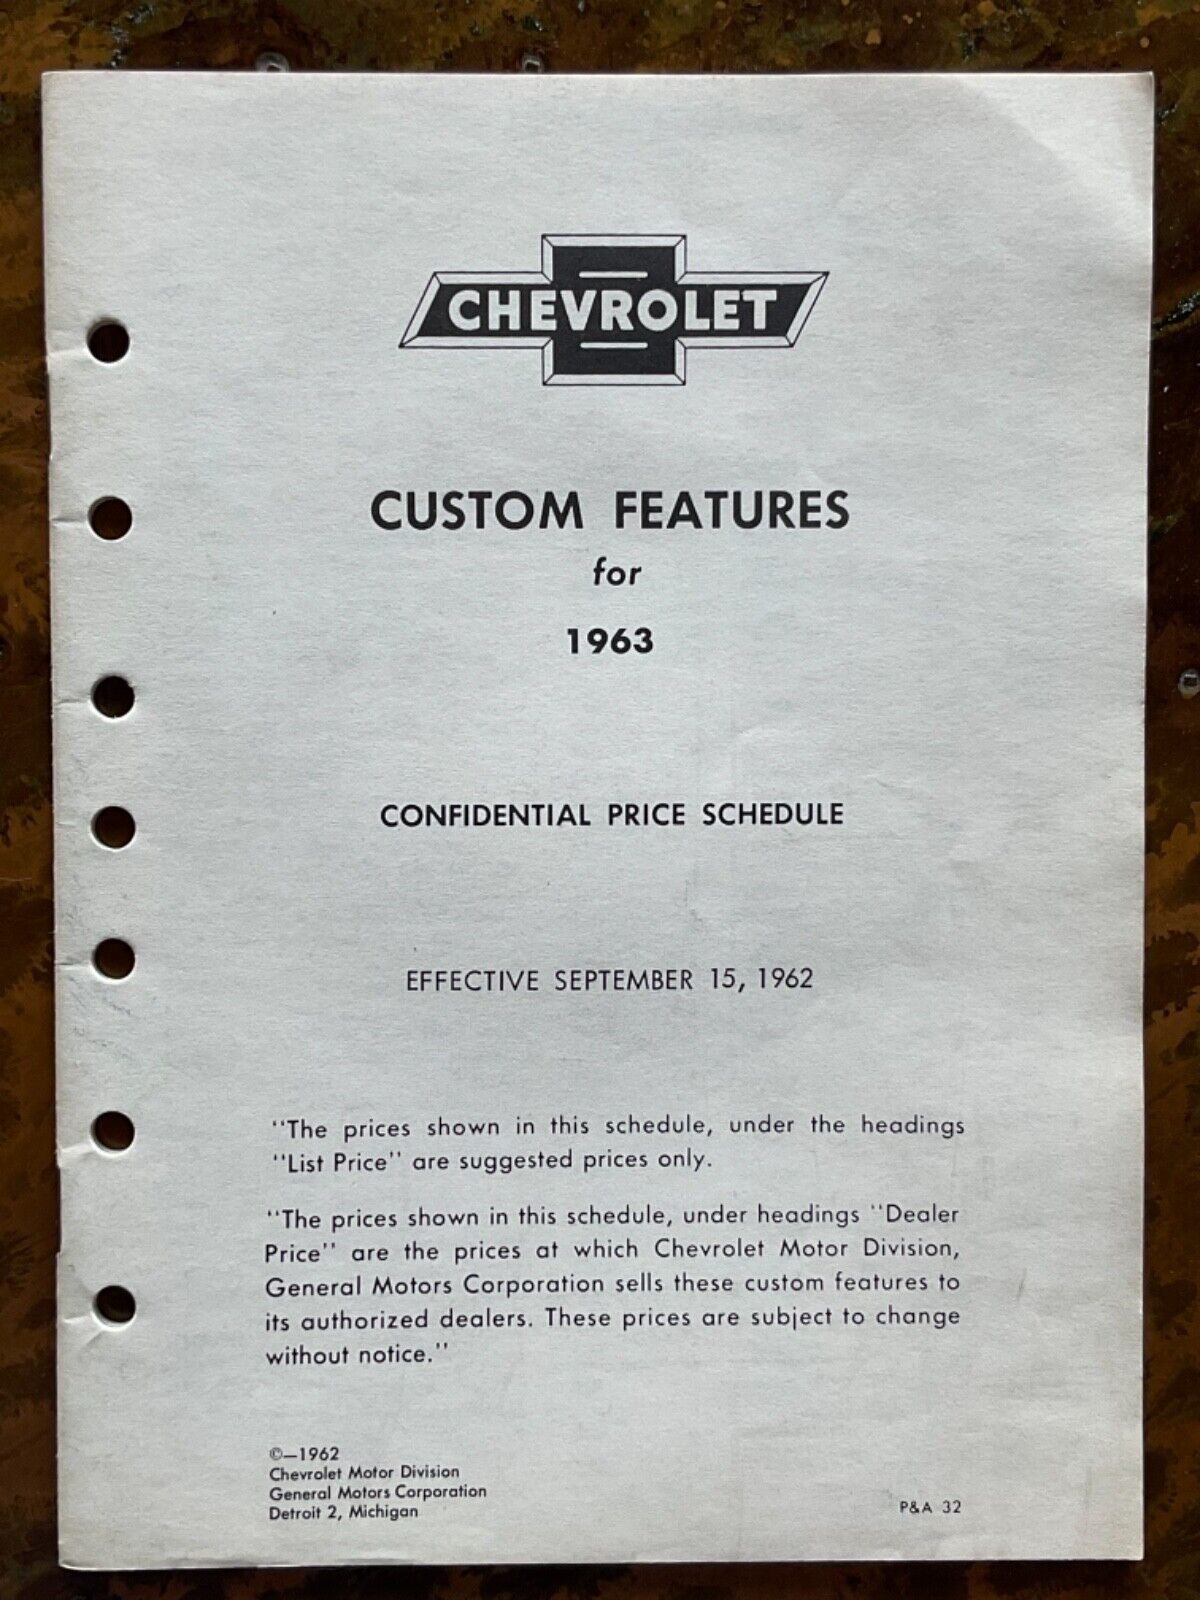 Original 1963 Custom Features Confidential Price Schedule mint condition